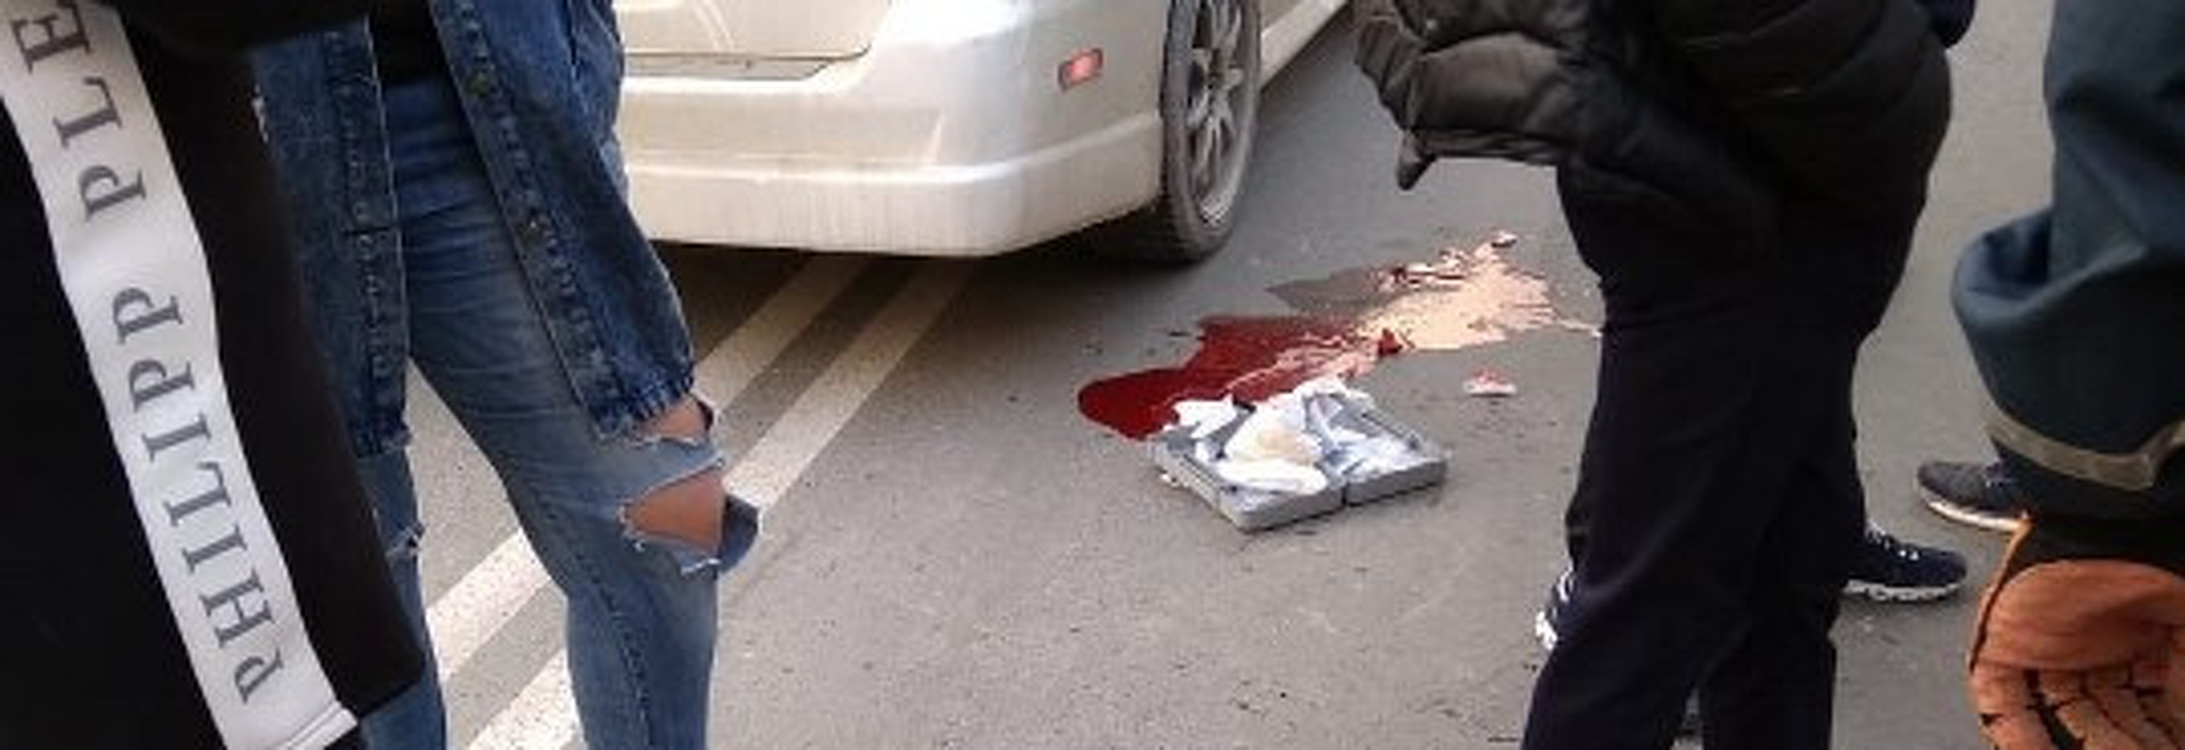 В Бишкеке 15-летний сбил насмерть двух женщин на угнанном автомобиле — Today.kg